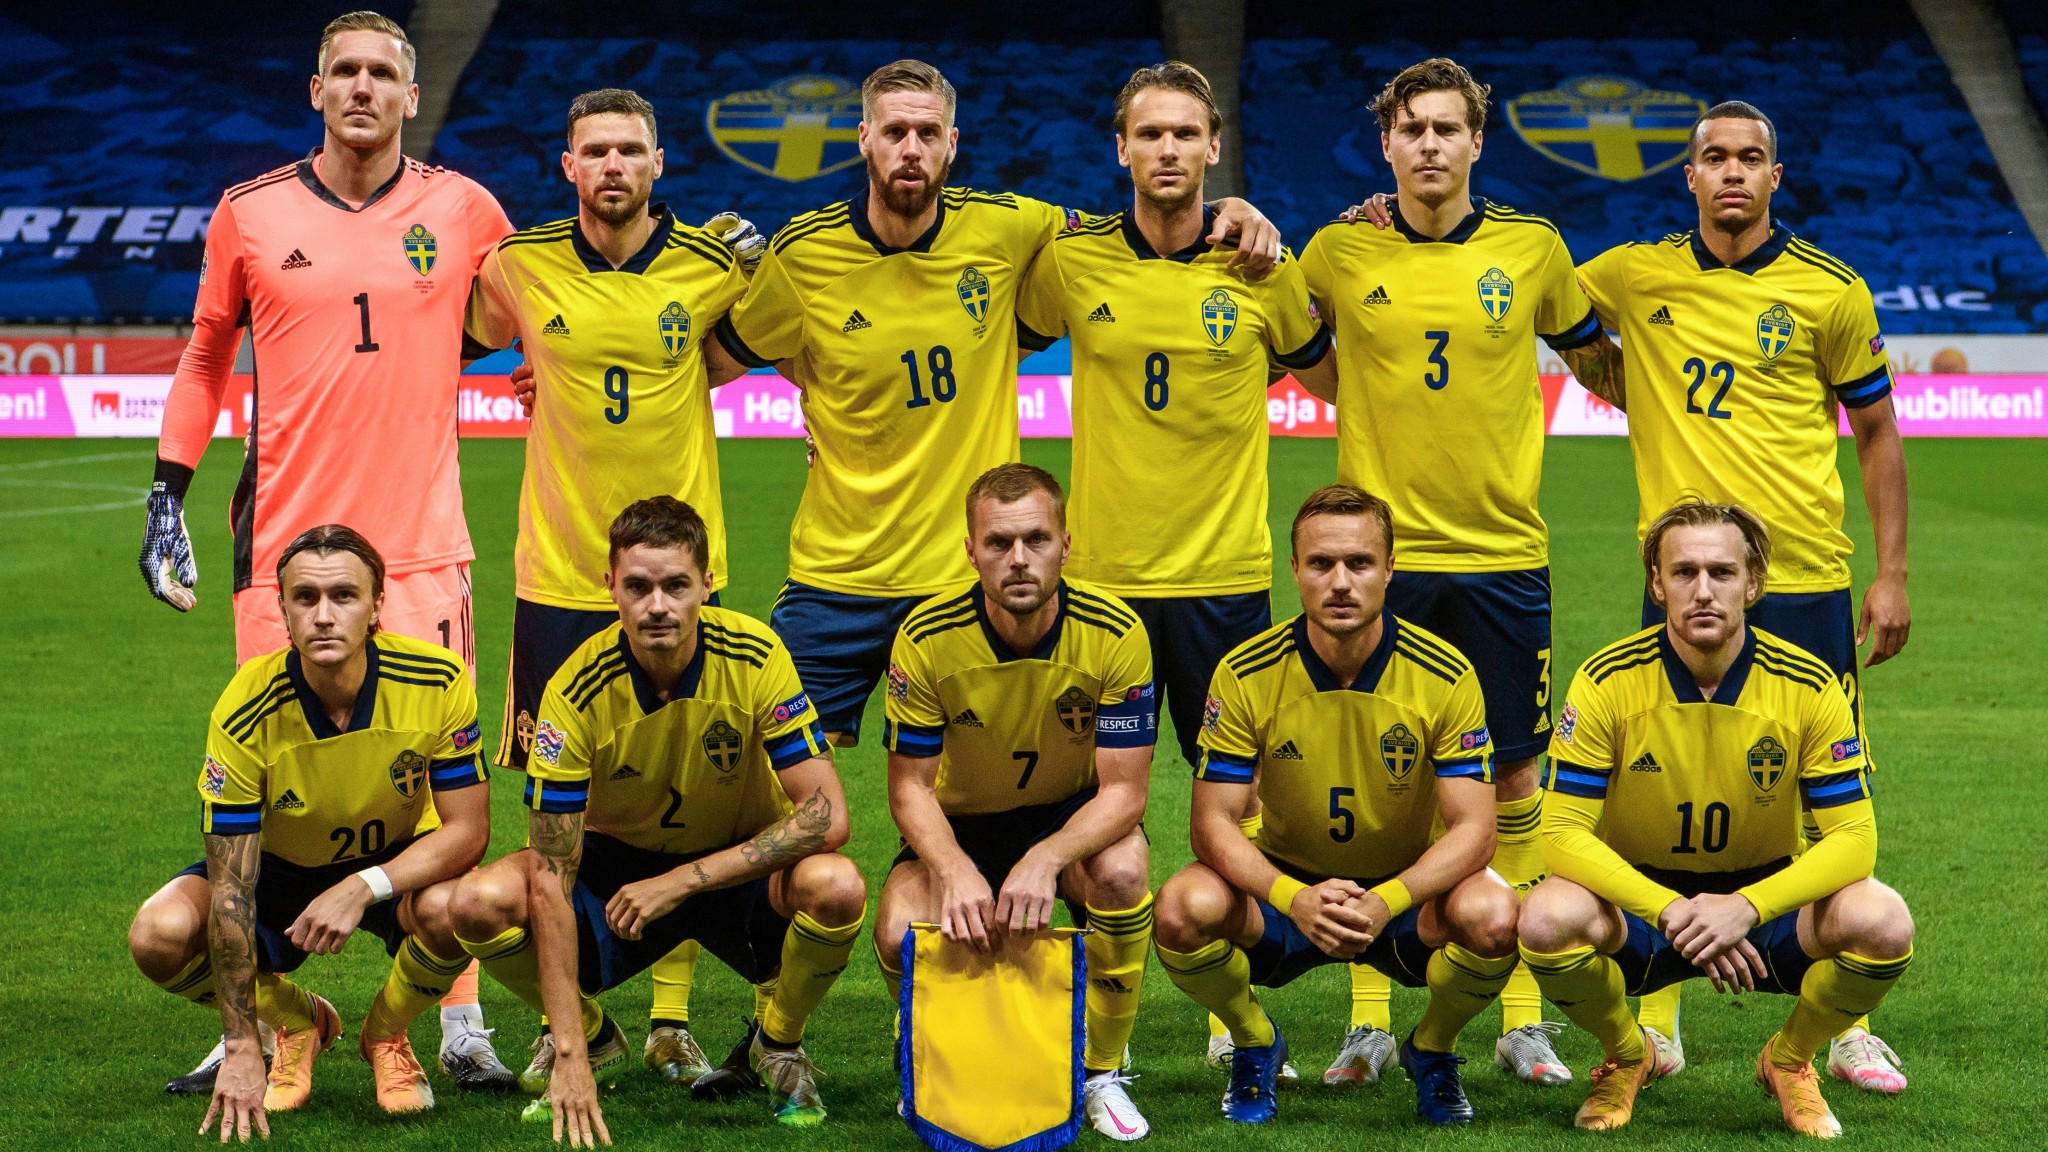 Distant Motivation Opera Kadra reprezentacji Szwecji na mistrzostwa Europy. Kto zagra w meczu Polska  - Szwecja?: Euro 2020 | Eurosport w TVN24